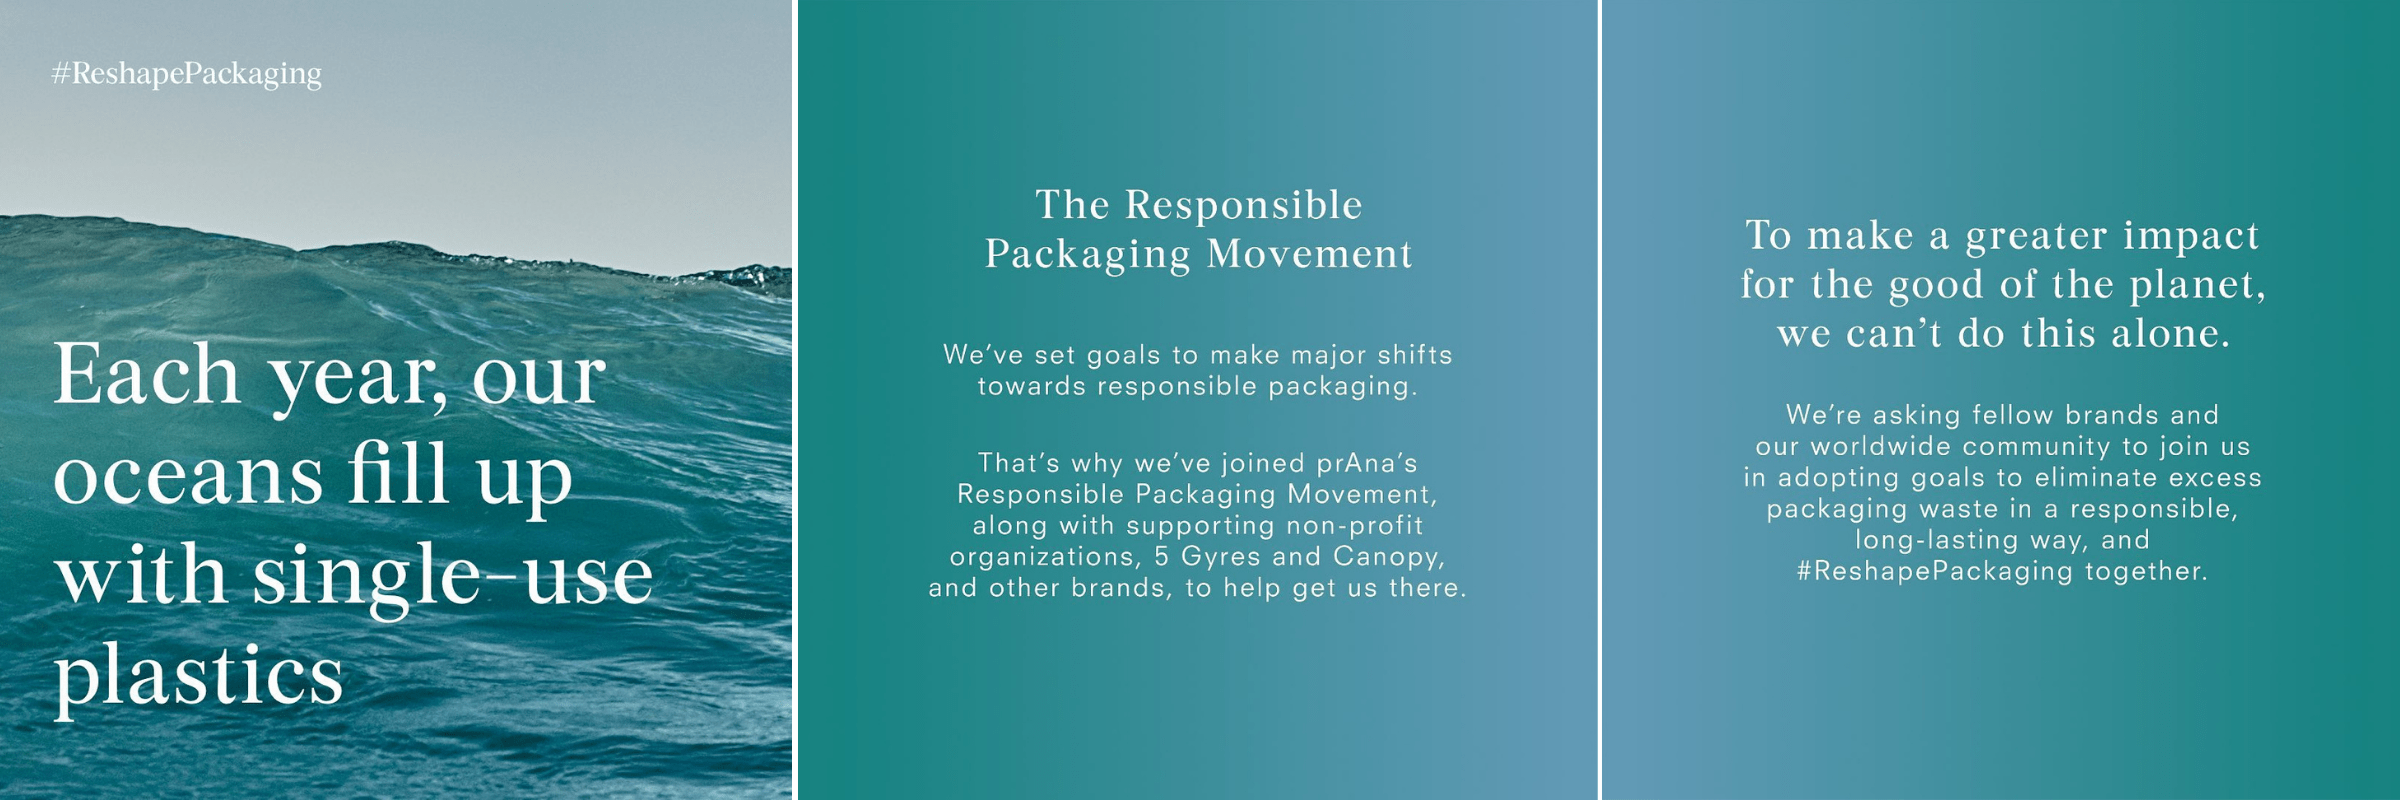 Responsible Packaging